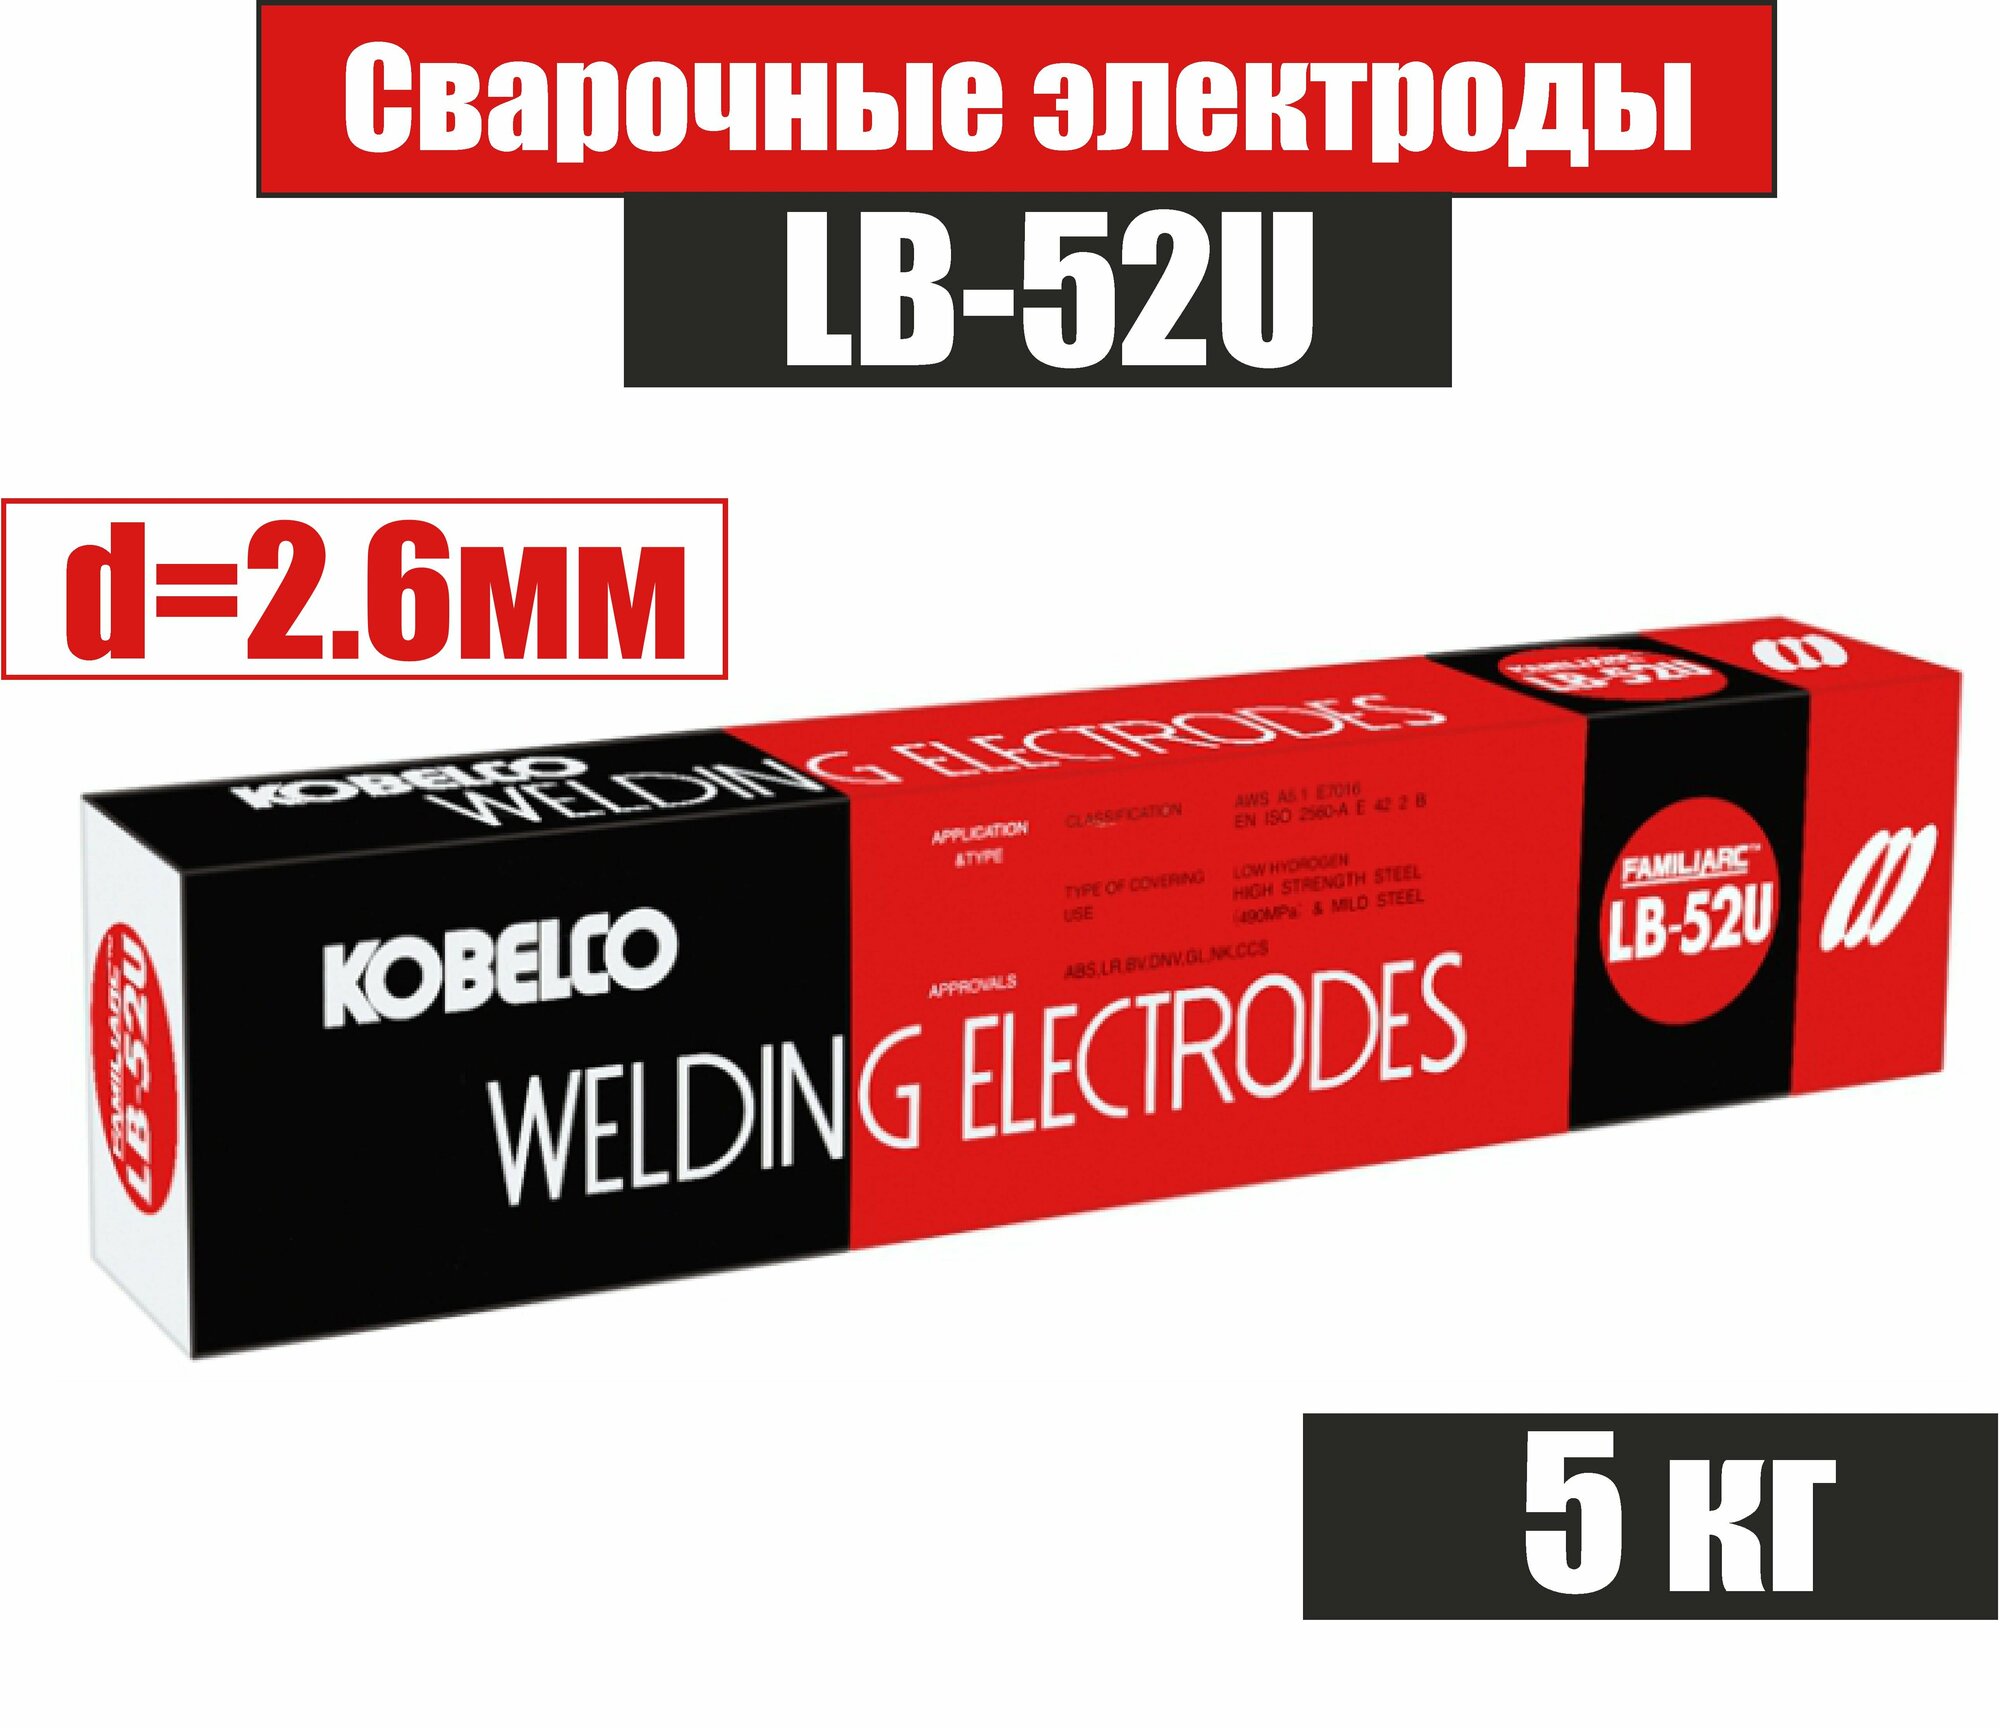 Электроды сварочные KOBELCO LB-52U, д.2,6мм 5 кг